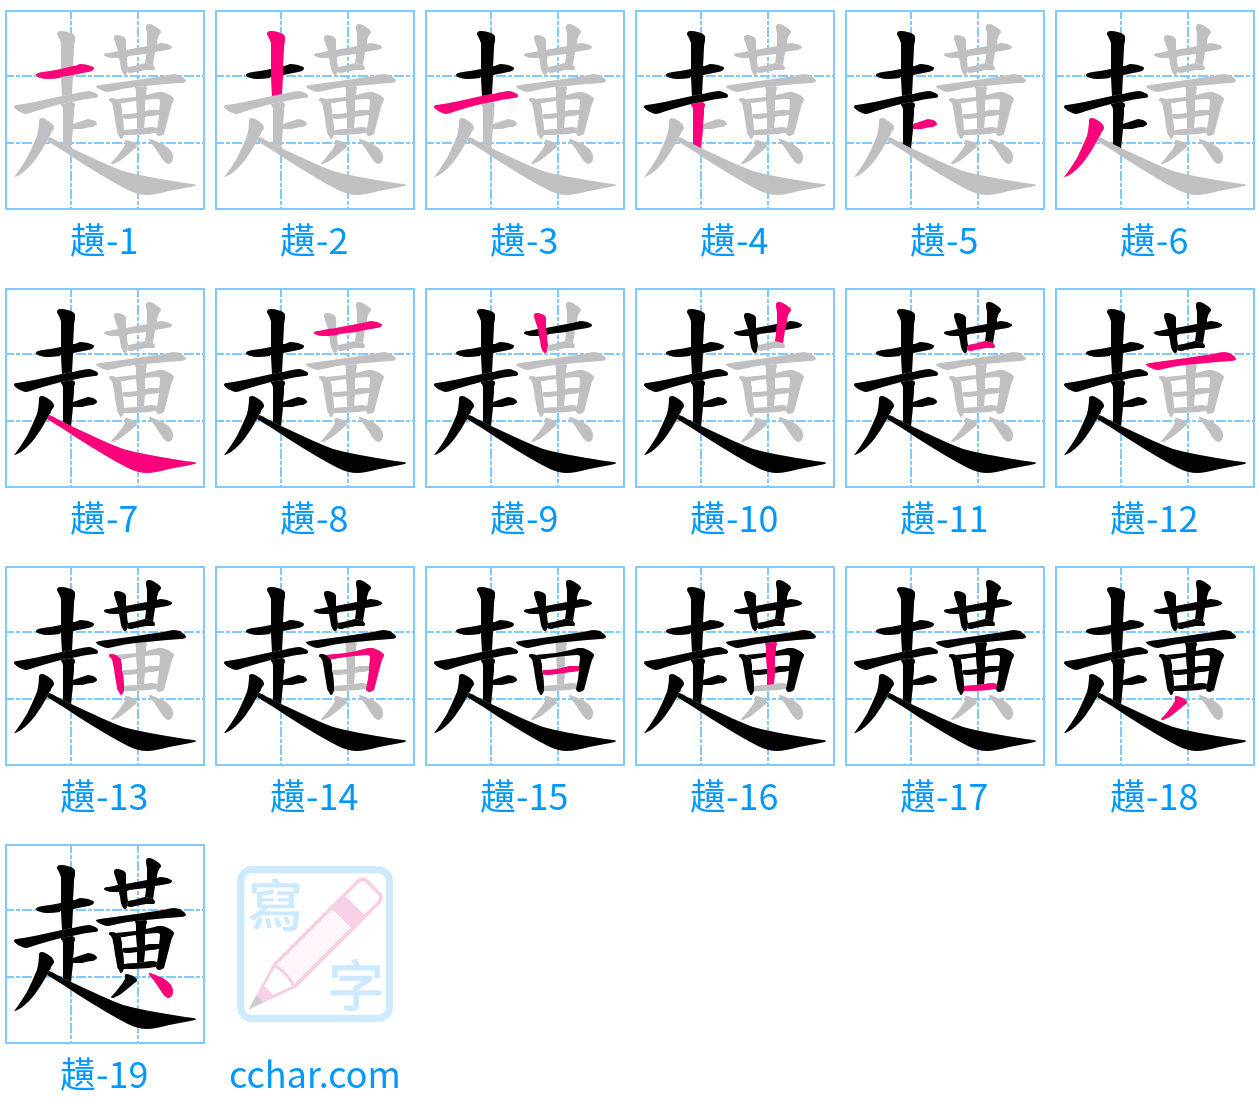 趪 stroke order step-by-step diagram